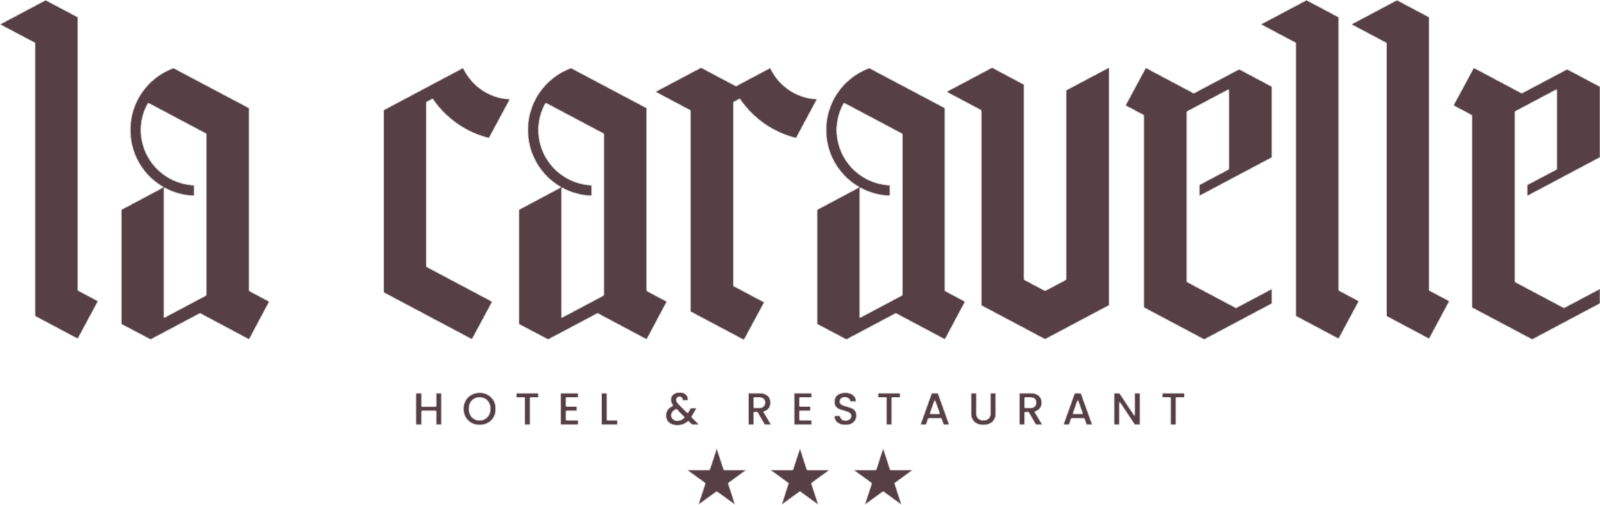 Hôtel  Restaurant La Caravelle